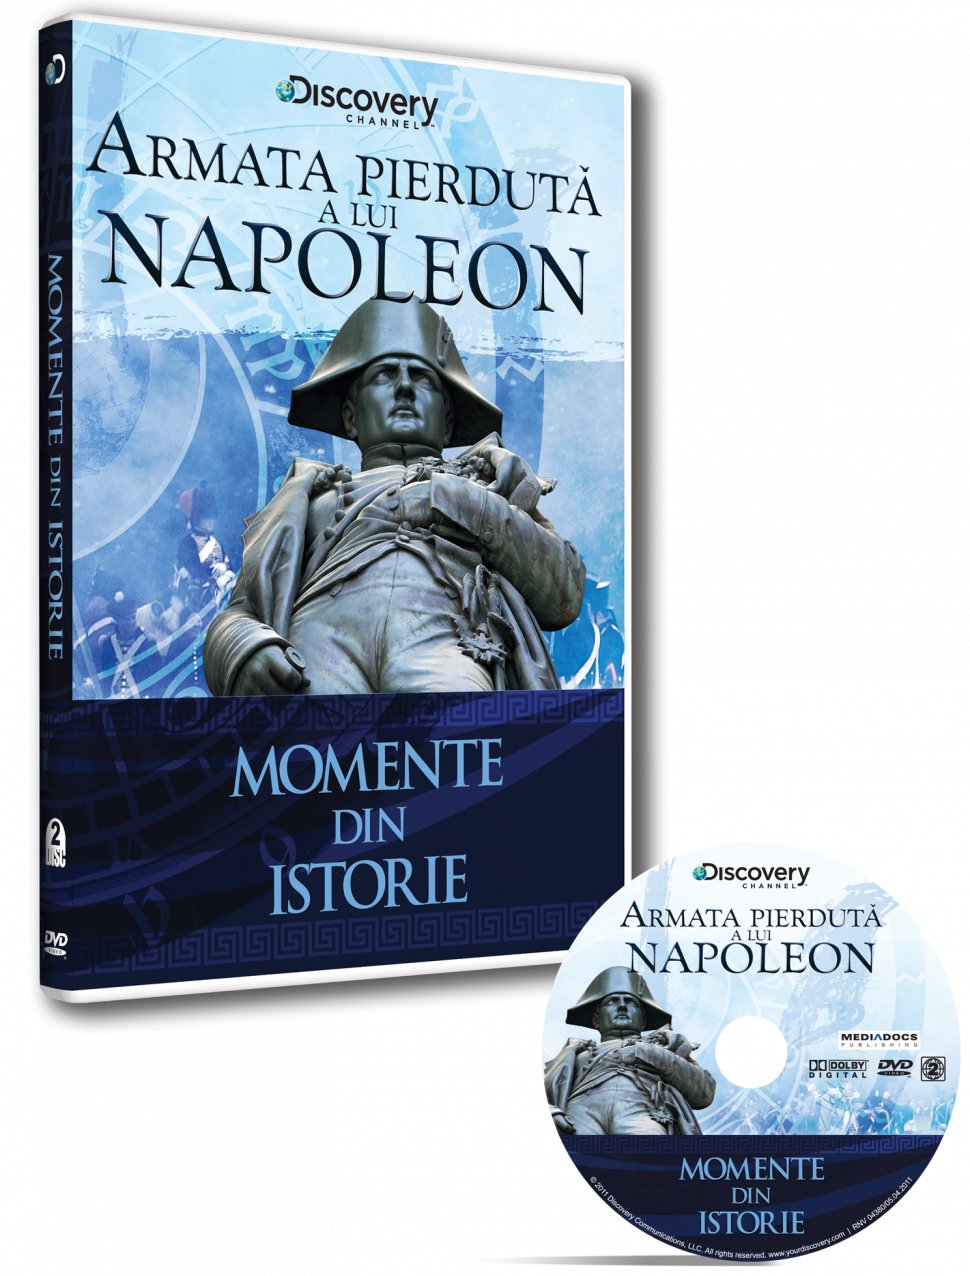 Documentare istorice, marca Discovery, împreună cu Jurnalul Naţional. Armata piedută a lui Napoleon